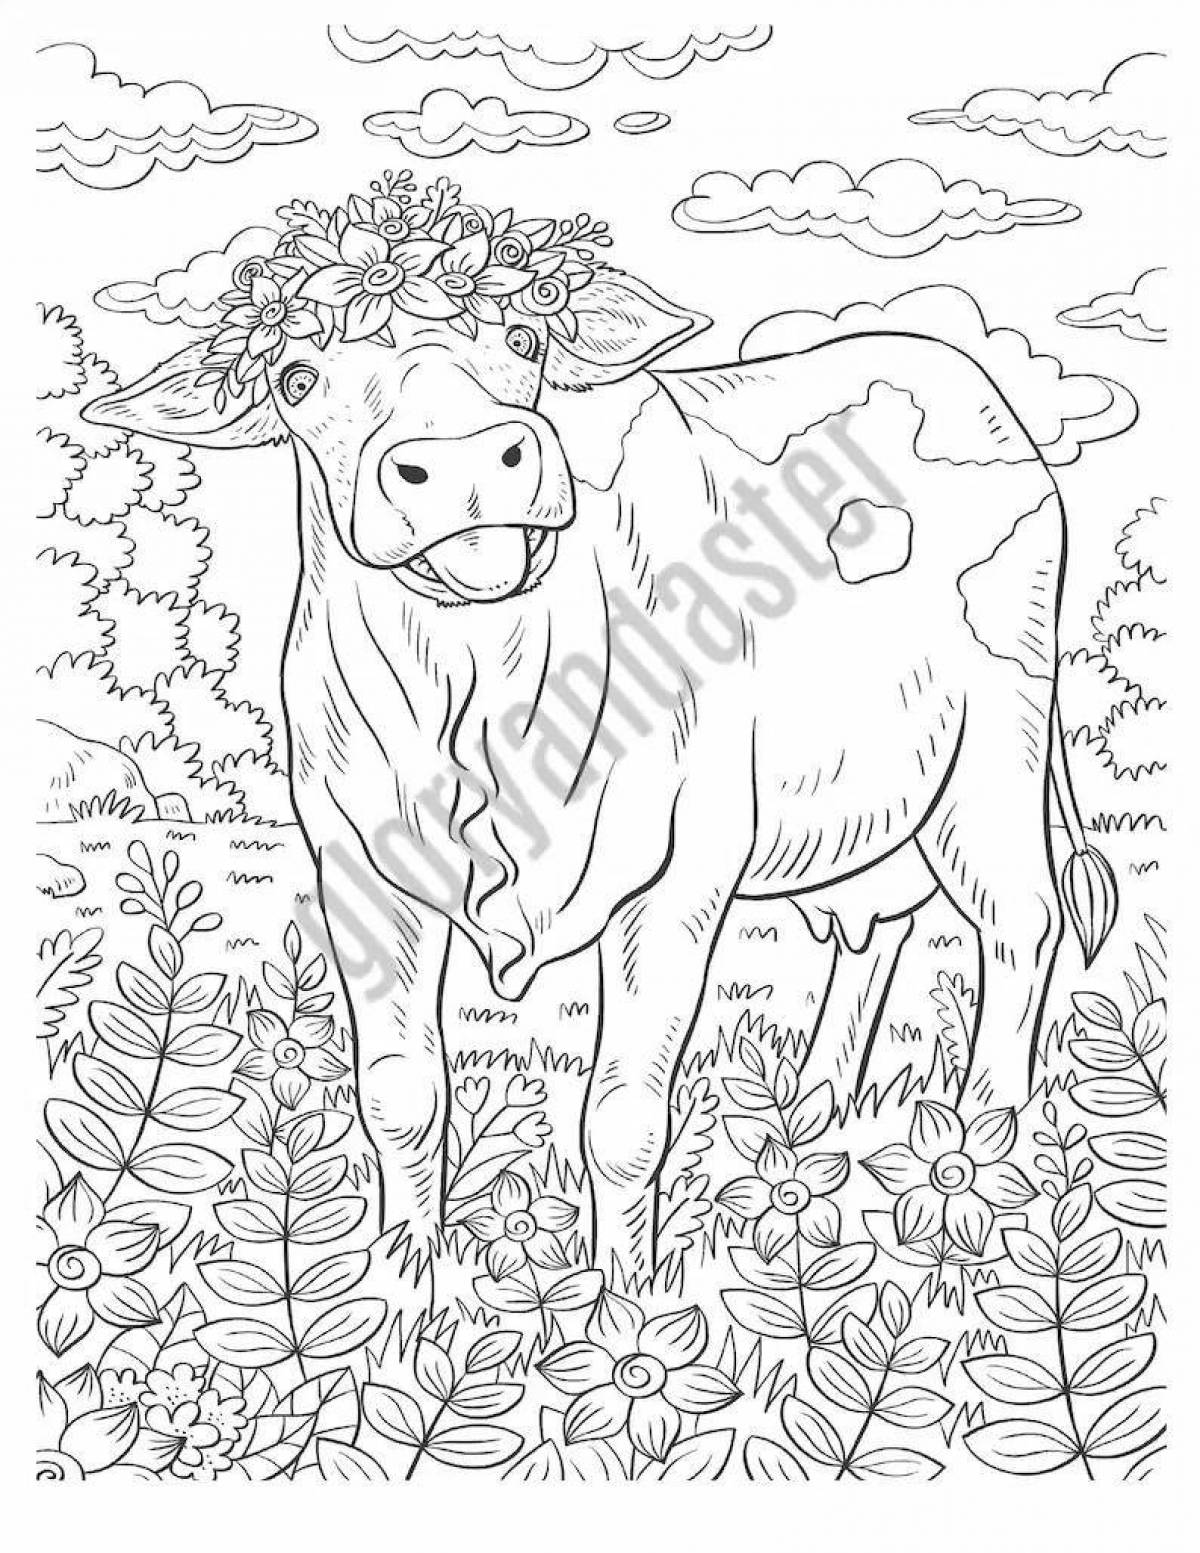 Раскраска с великолепным принтом коровы